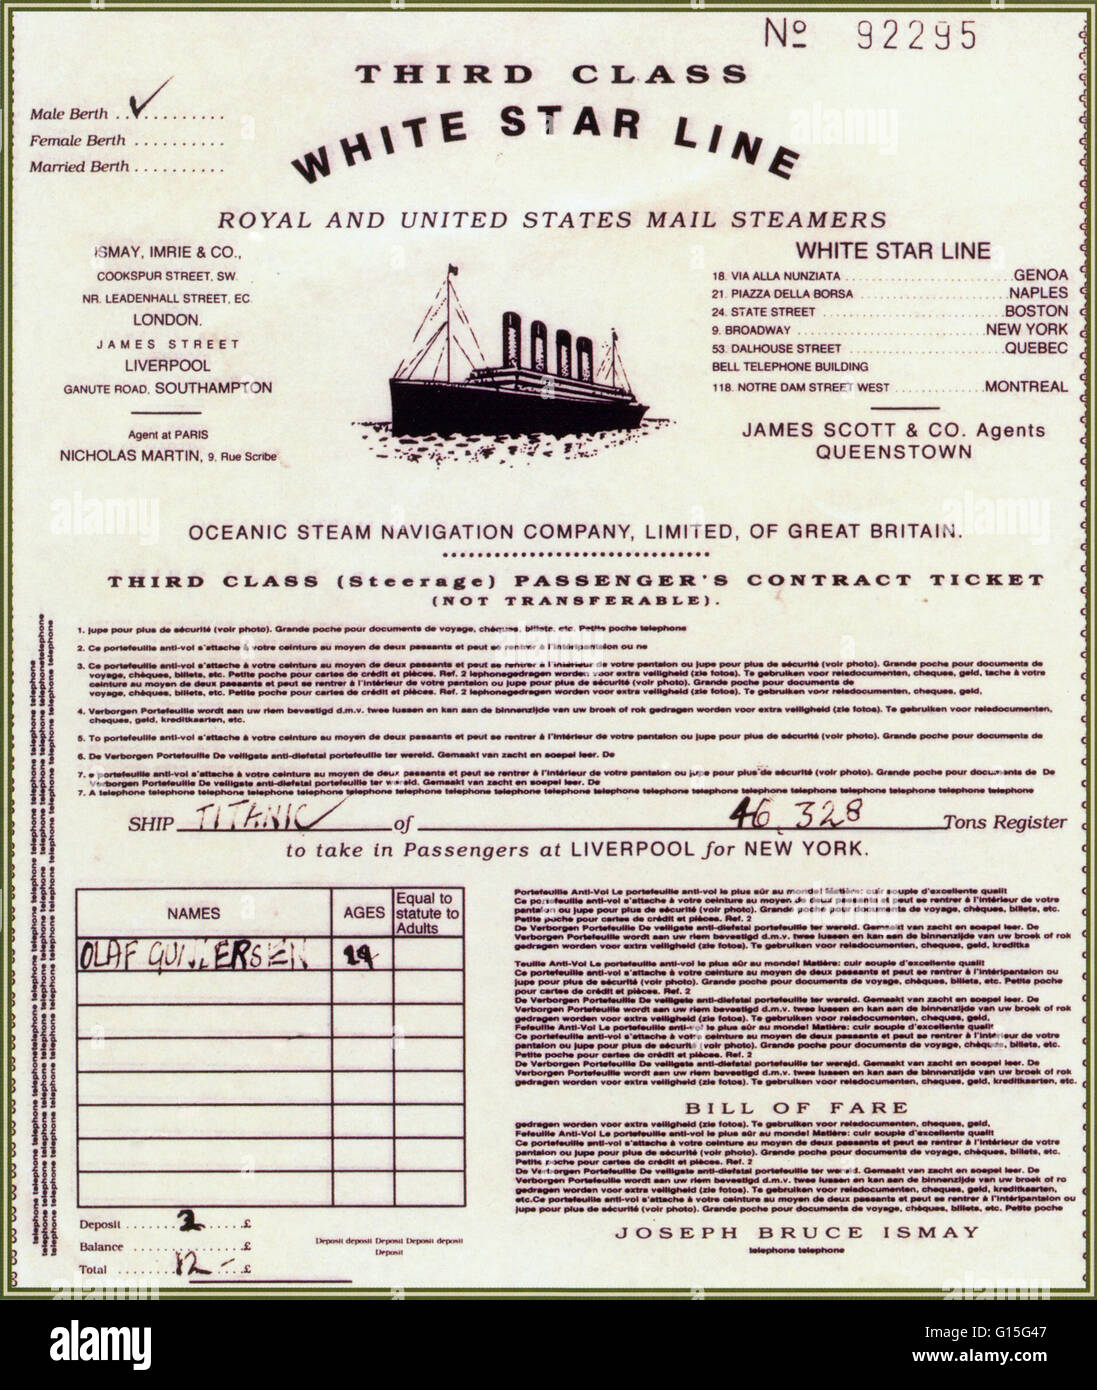 Réplique d'une troisième classe pour le Titanic. Le même type de billet a été utilisé à d'autres navires. Remarquez le grand nombre de sociétés imbriquées qui sont impliqués dans la ligne de navigation. Banque D'Images